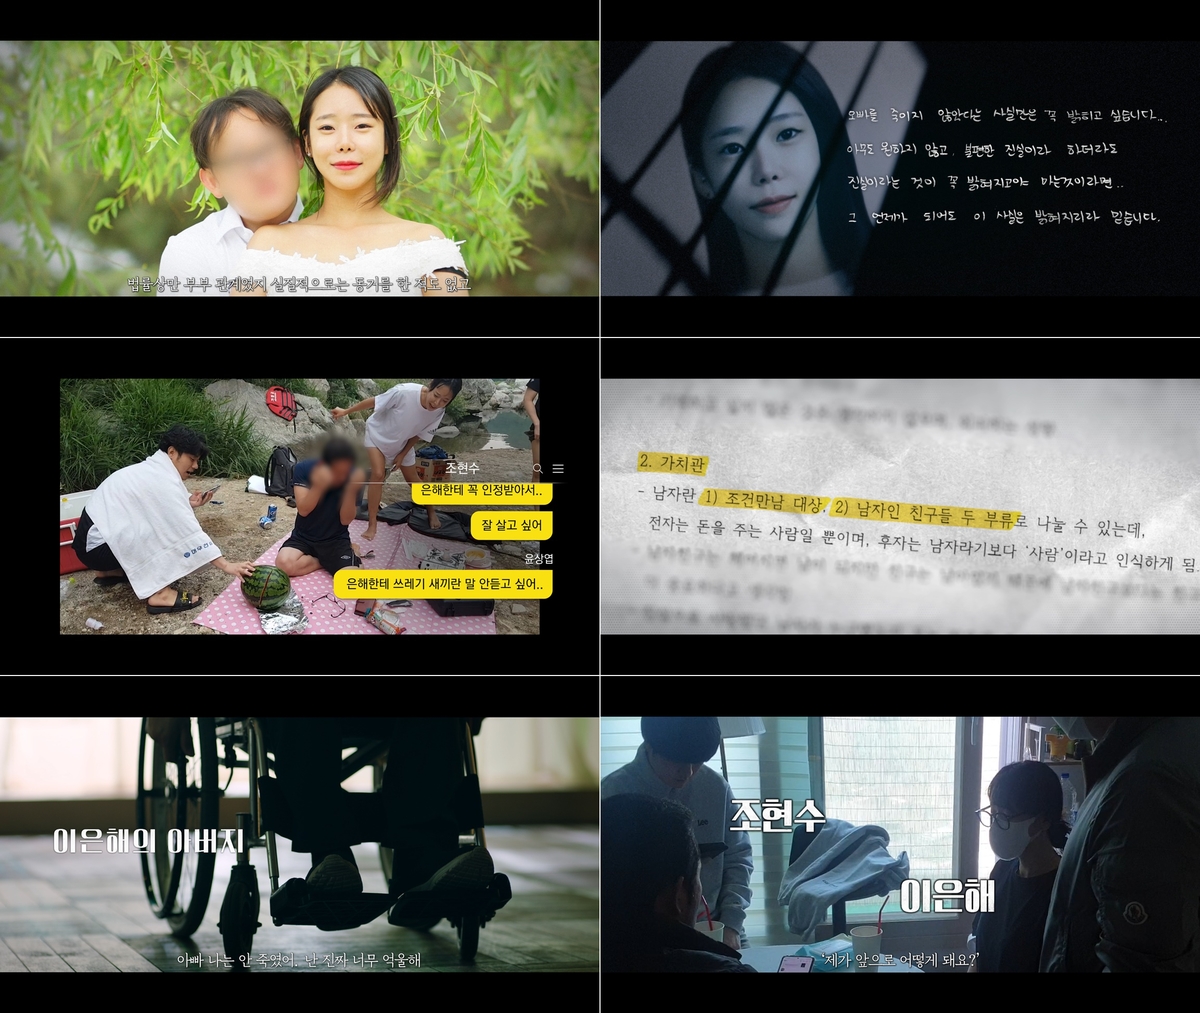 X+U와 MBC가 공동 제작한 다큐멘터리 '그녀가 죽였다'